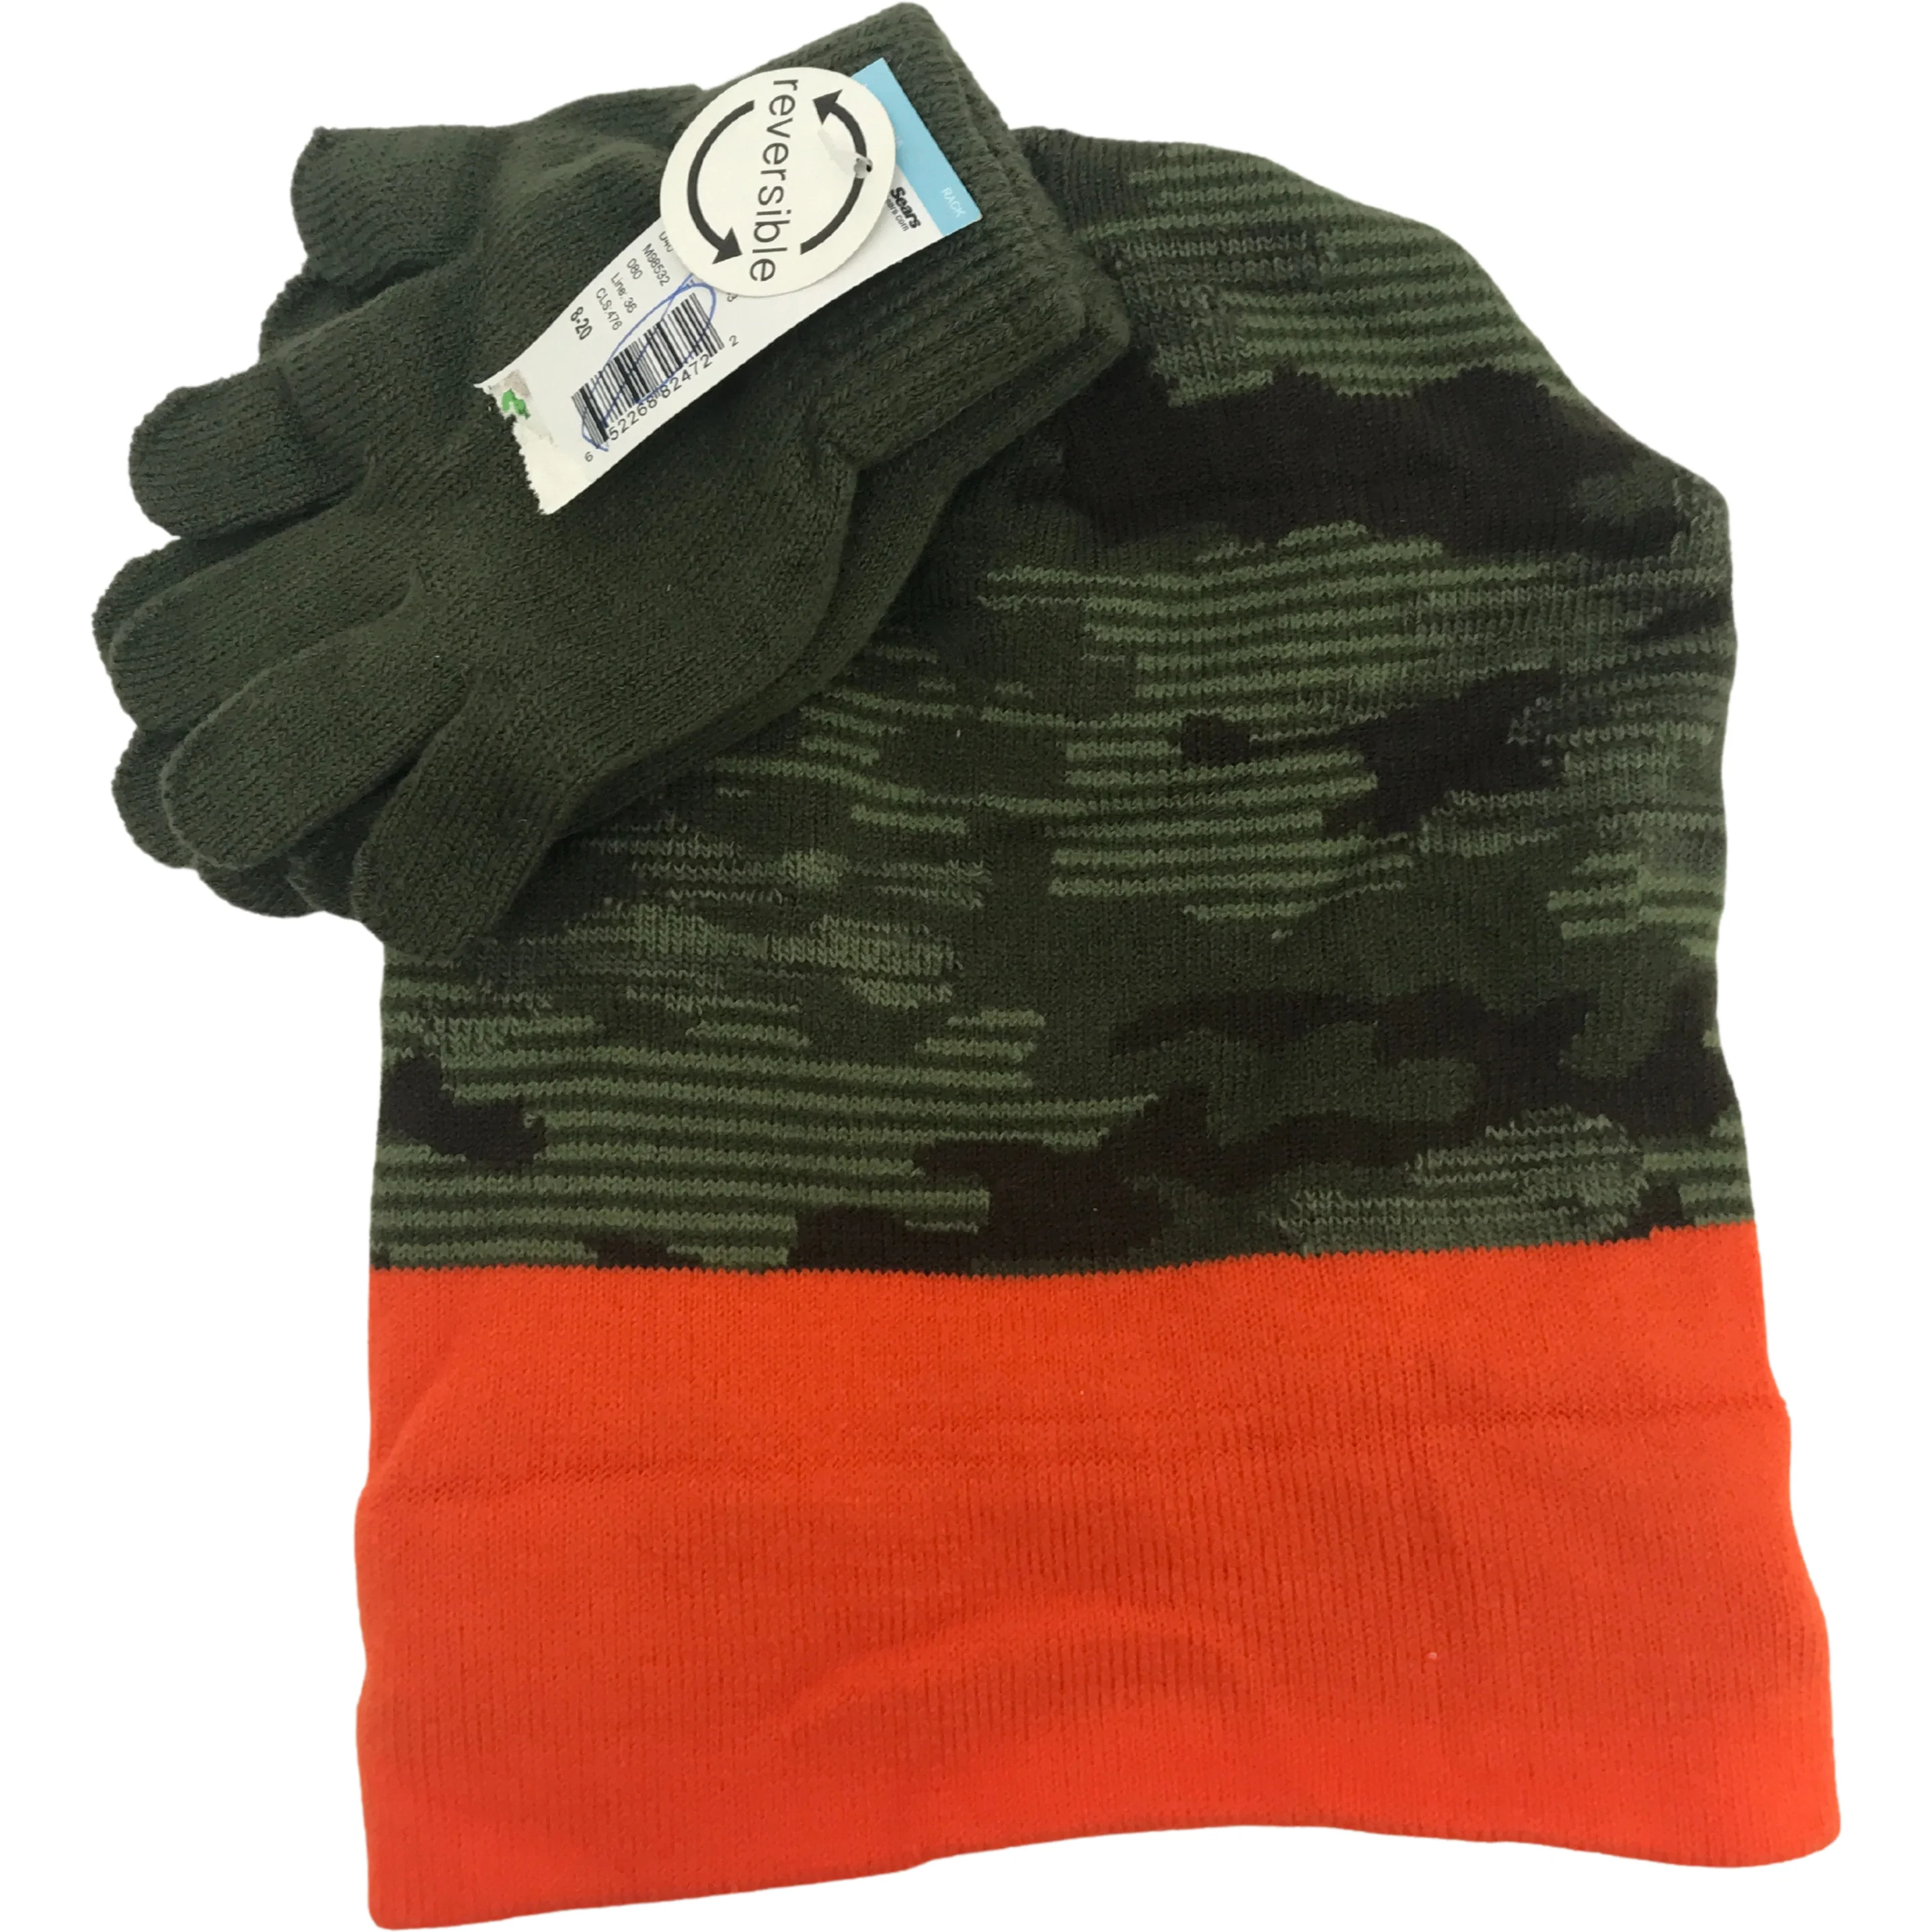 Children's Winter Hat & Gloves Set / Boys Beanie / Green Camo / 8-20